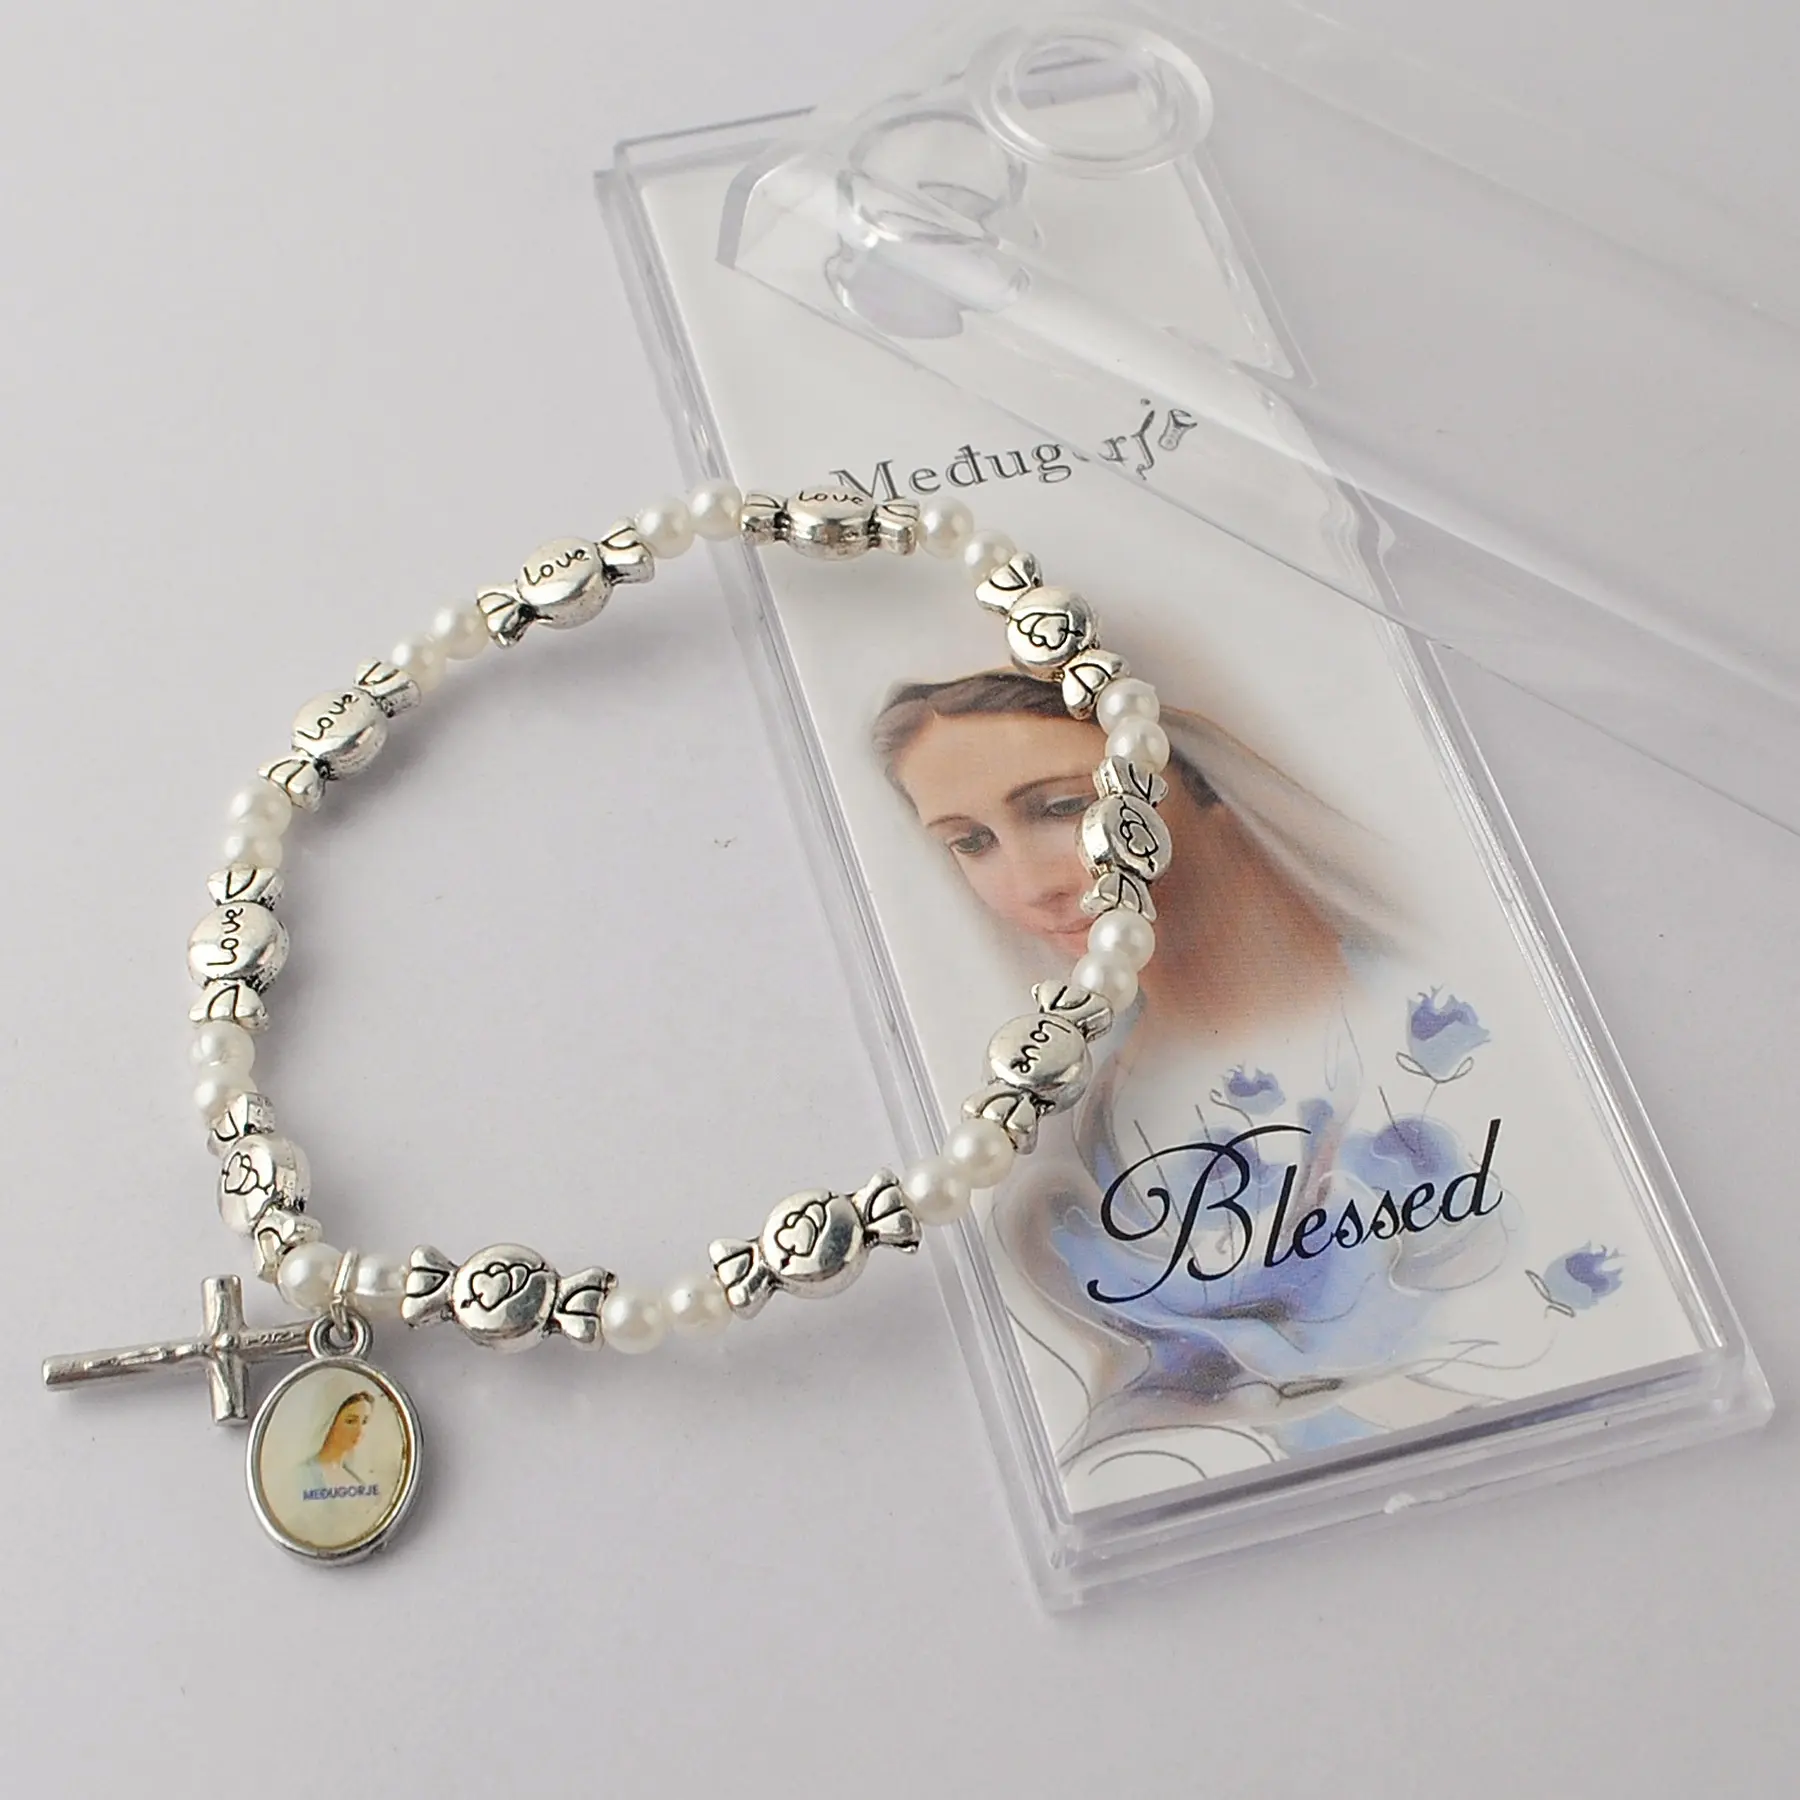 Pulseira de metal doces, com contas de pérolas brancas, pulseira cristã com impressão medugorje, pacote em caixa